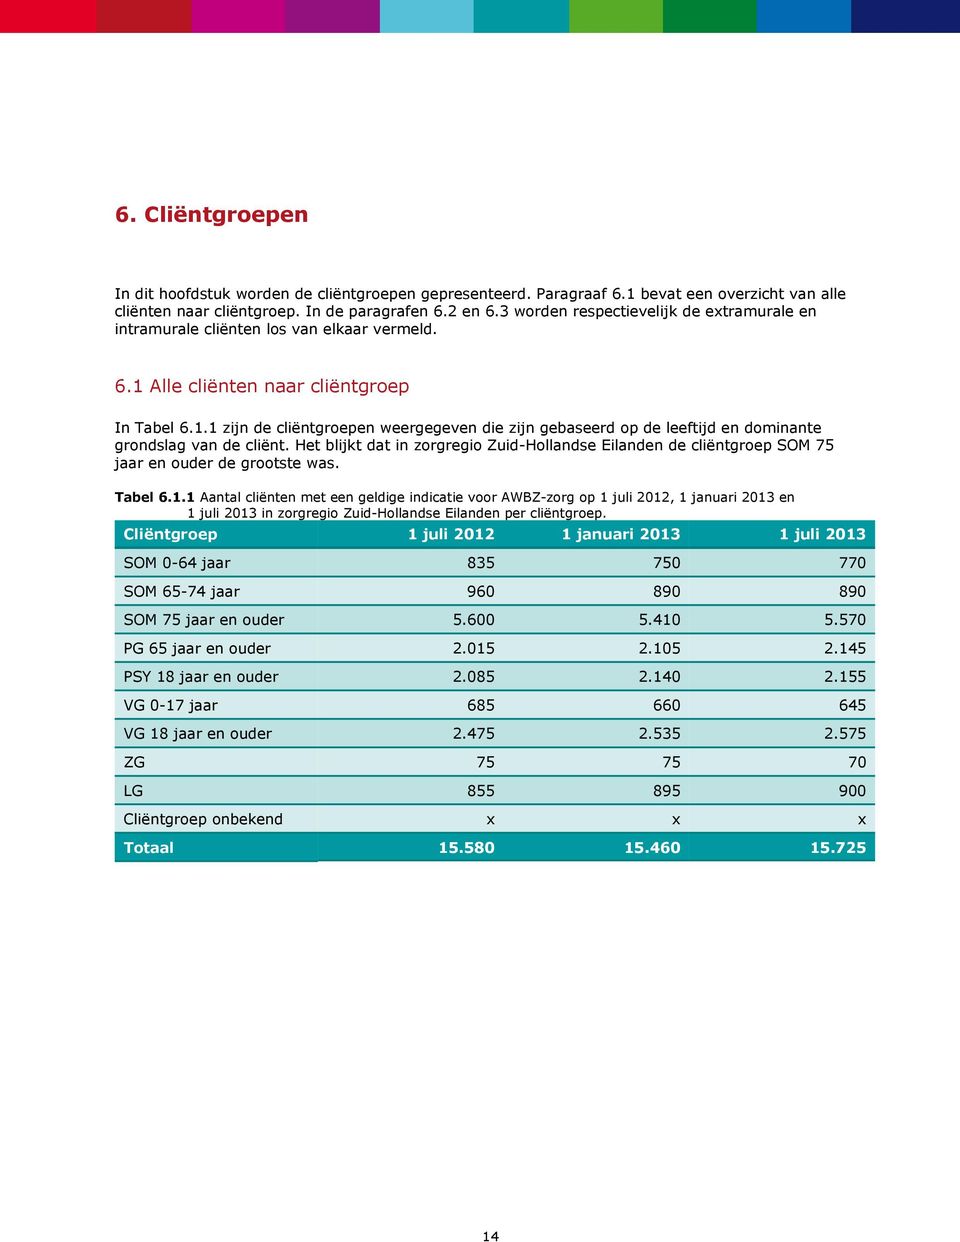 Het blijkt dat in zorgregio Zuid-Hollandse Eilanden de cliëntgroep SOM 75 jaar en de grootste was. Tabel 6.1.